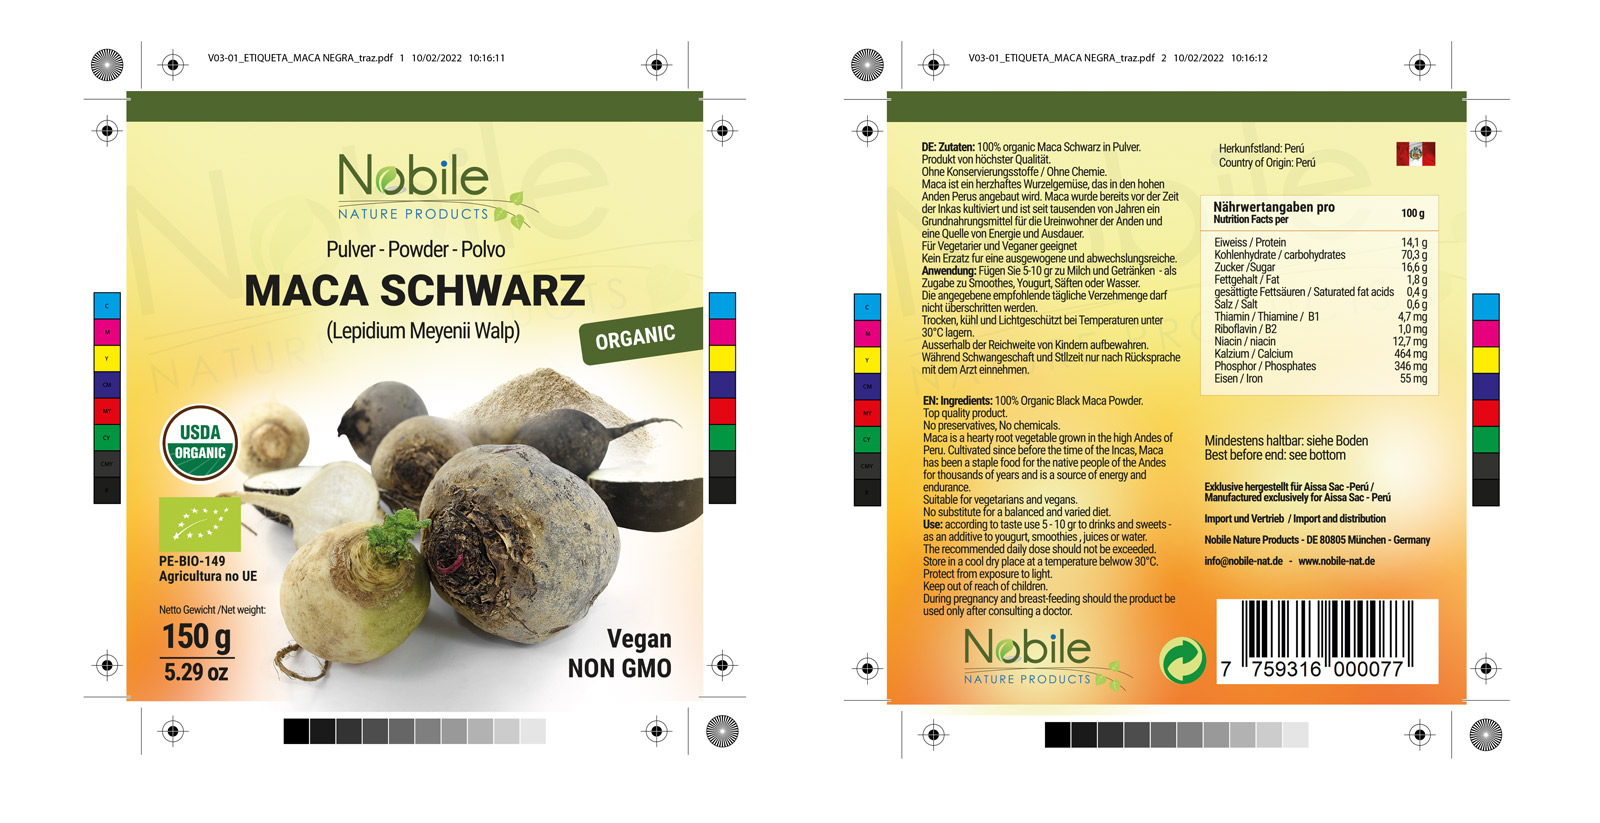 Diseño gráfico y creativo de etiquetas y packaging de productos MACA NEGRA para Nobile